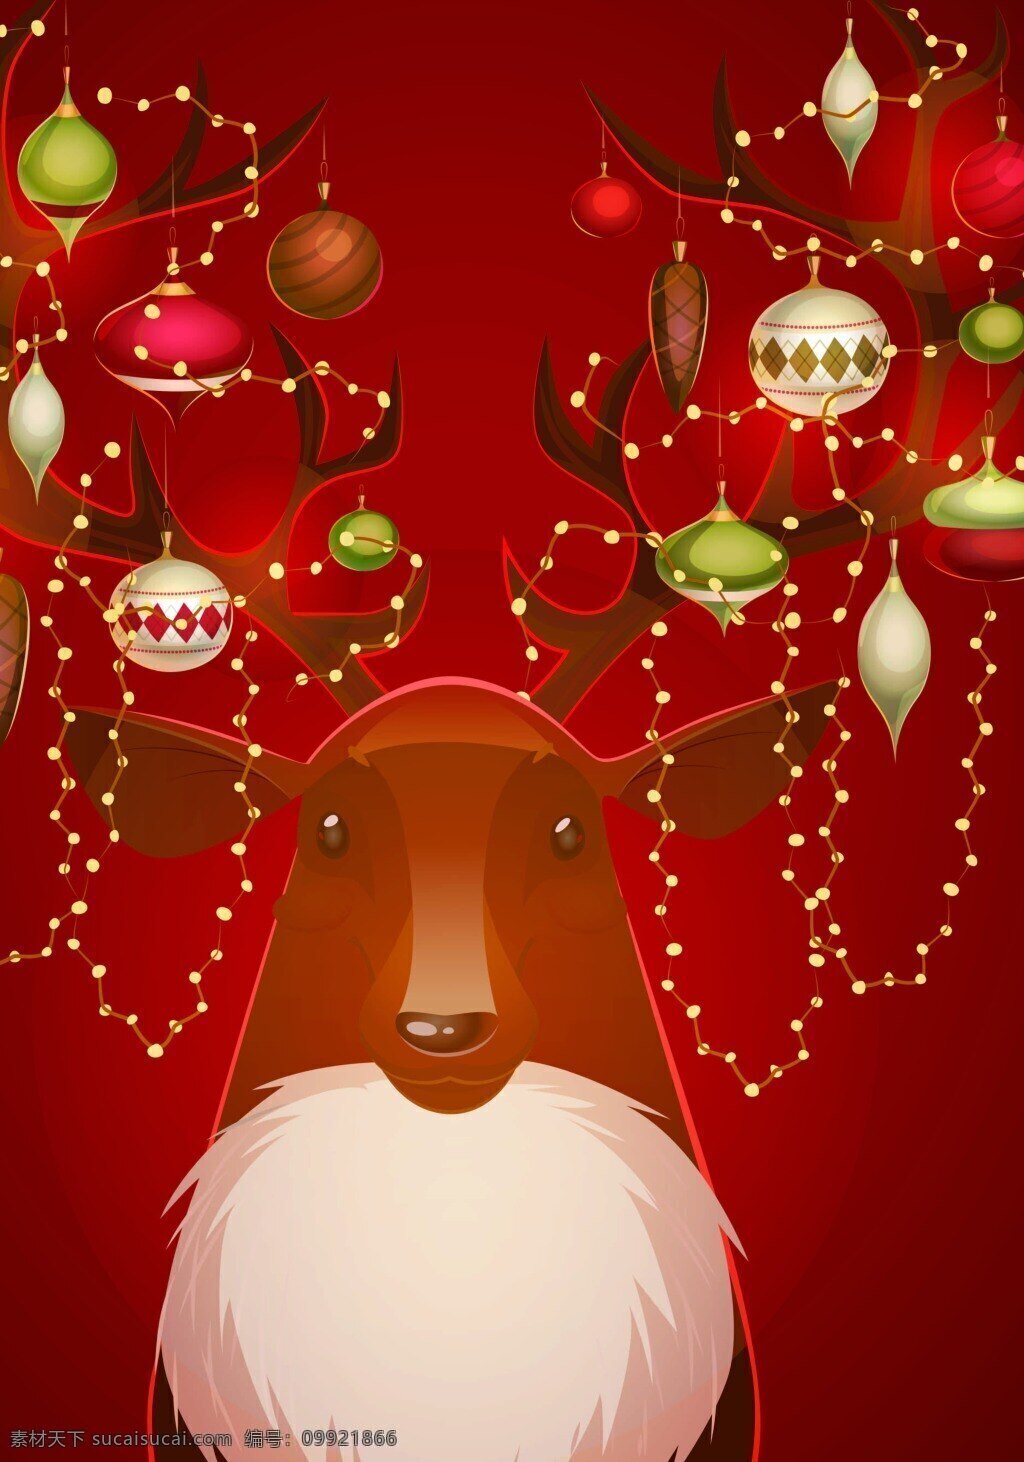 圣诞 麋鹿 背景 模版 节日装饰 卡通 童趣 矢量背景模版